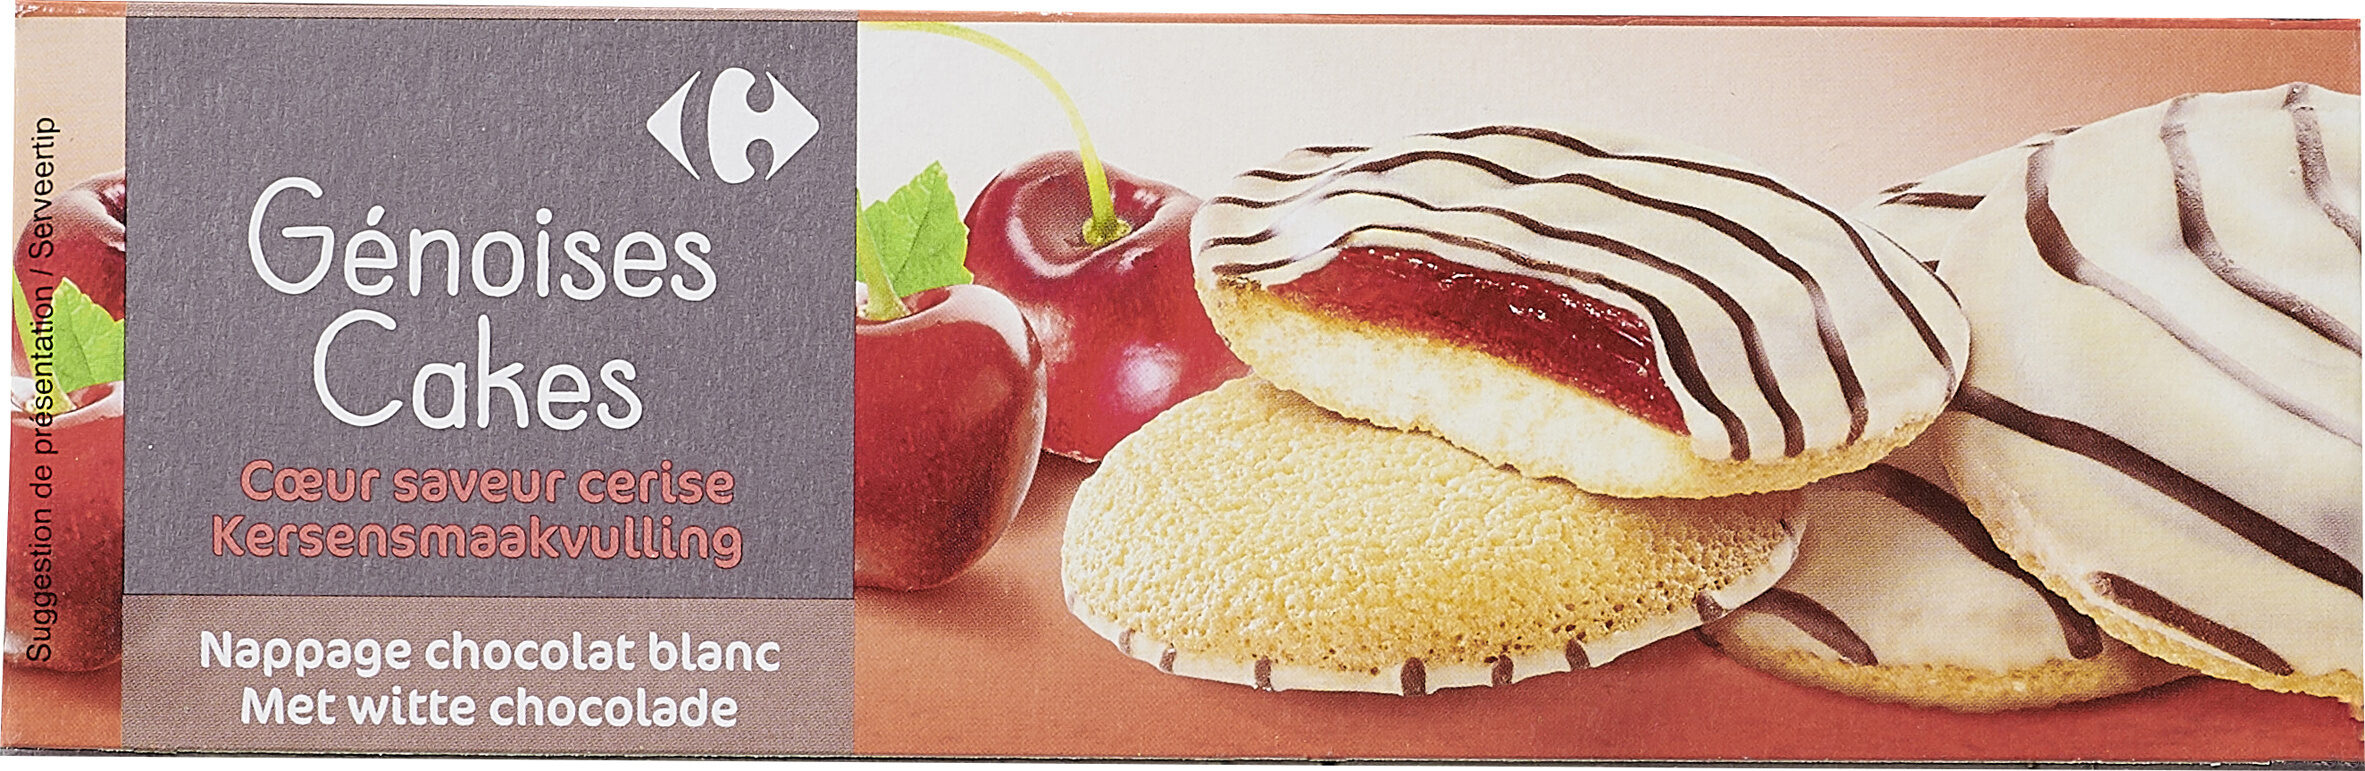 Genoises cakes saveur cerise - Producto - fr